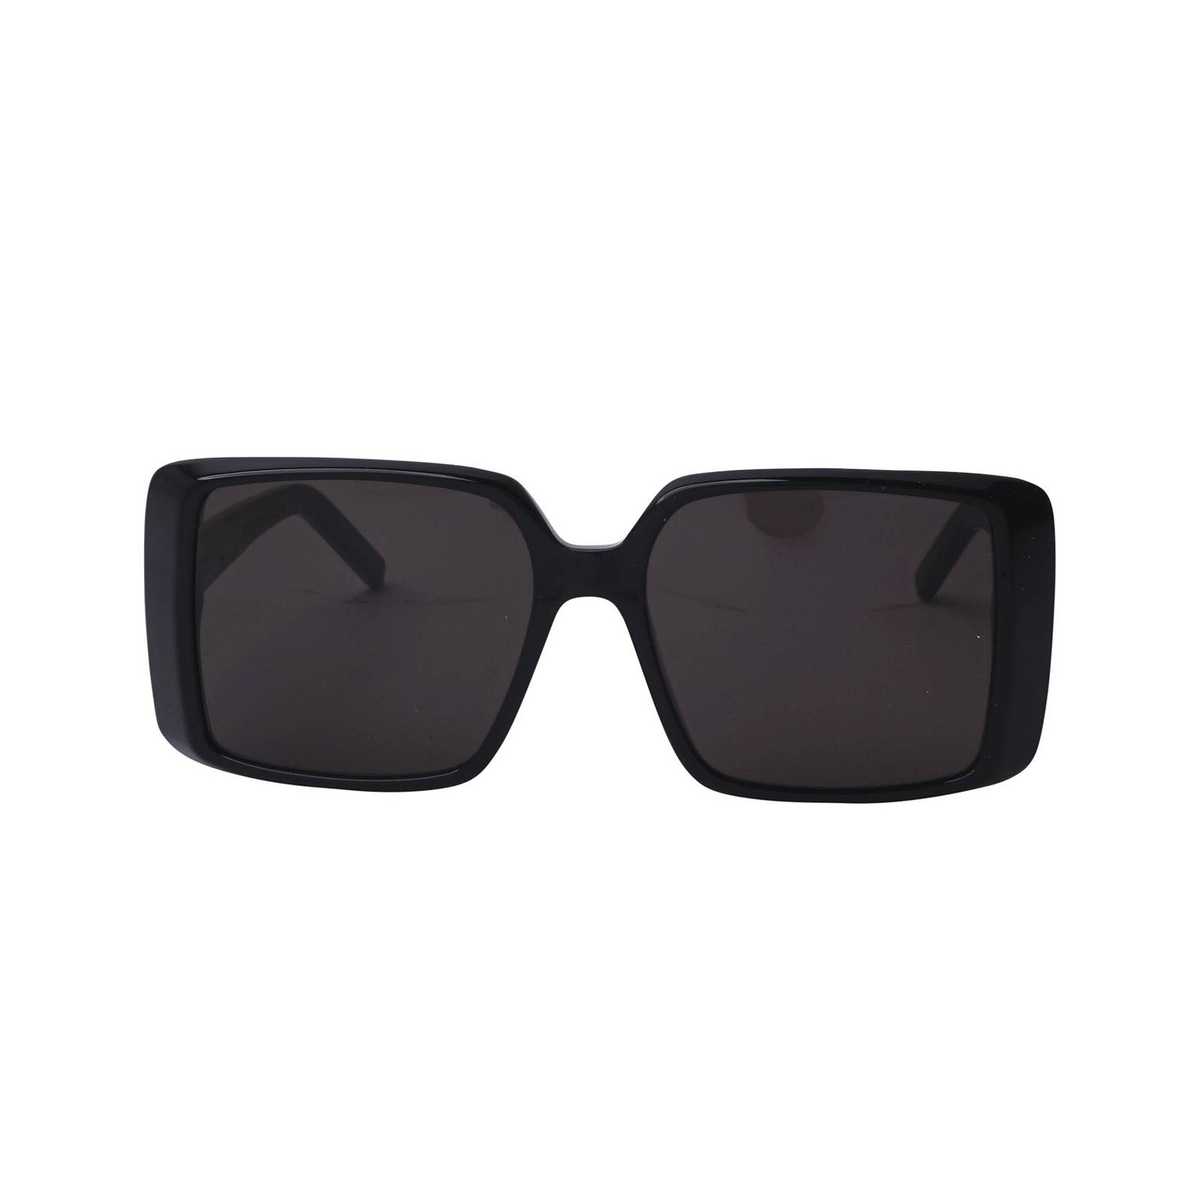 Saint Laurent SL 451 Sunglasses 001 Black - front view